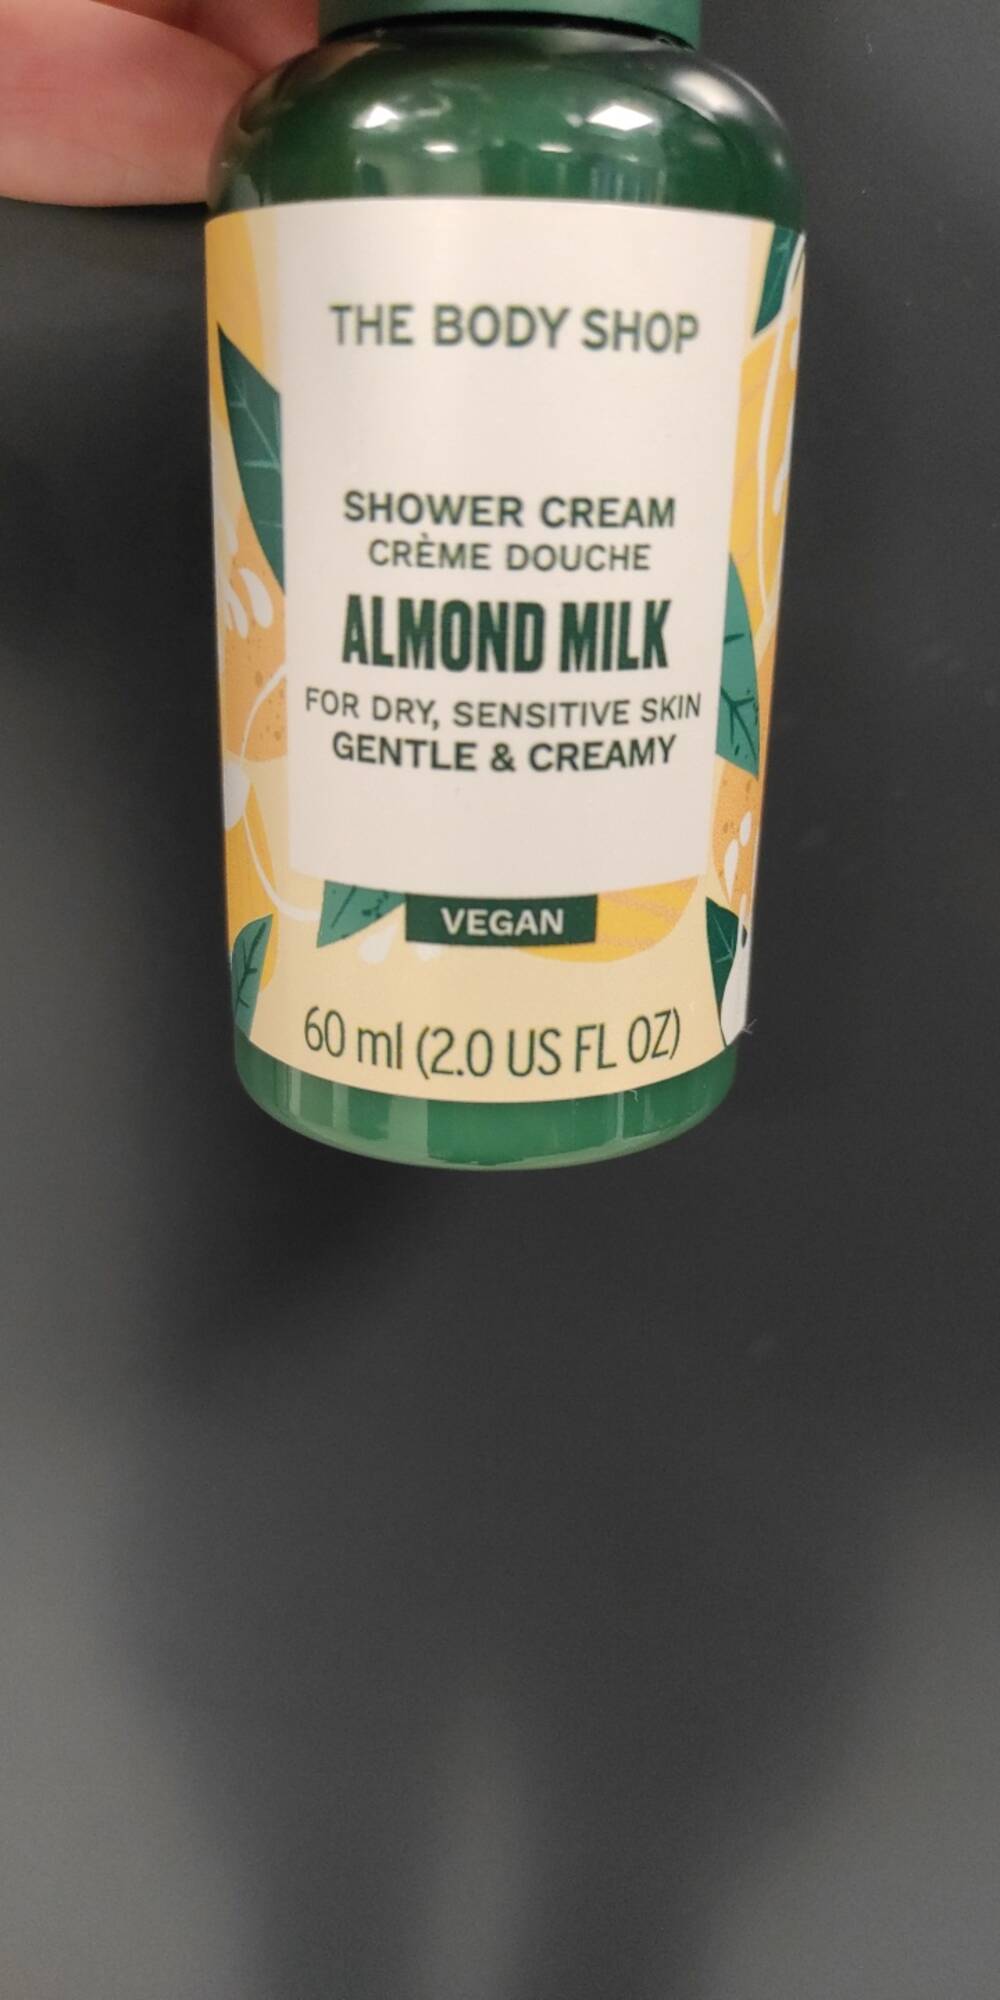 THE BODY SHOP - Crème douche almod milk vegan